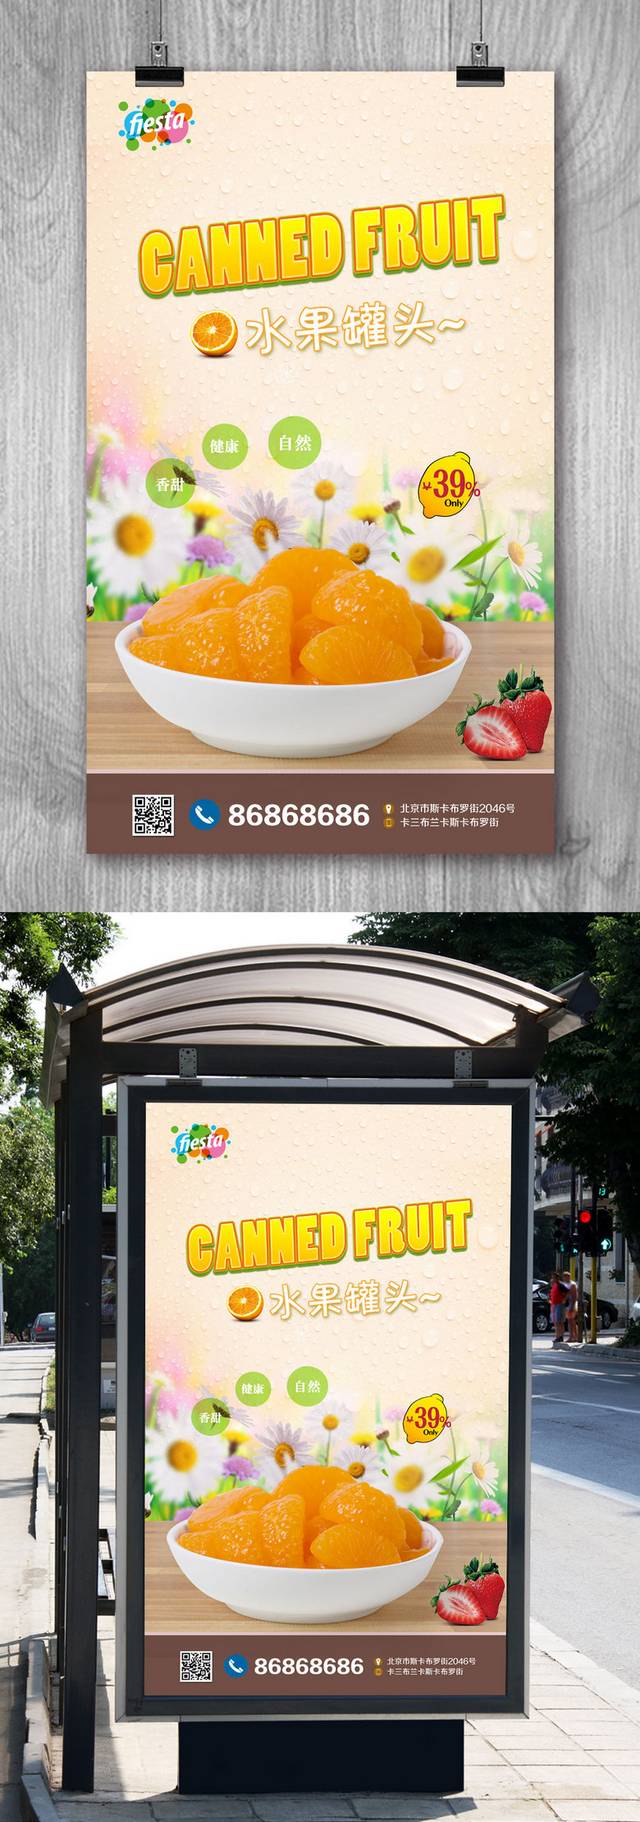 高清水果罐头海报设计